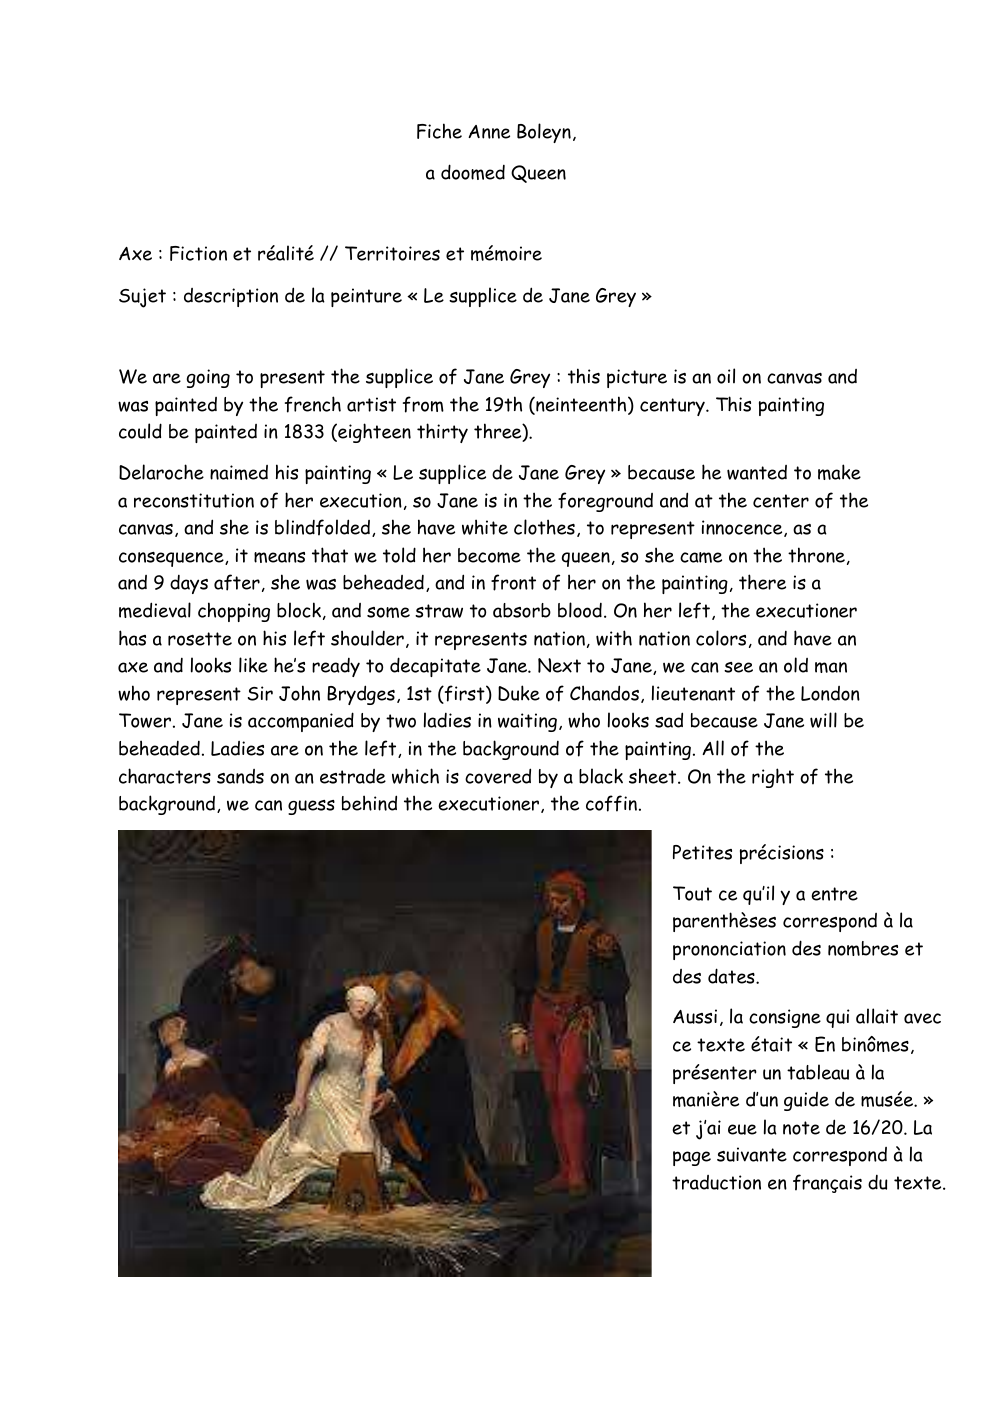 Prévisualisation du document description de la peinture "Le supplice de Jane Grey" en anglais